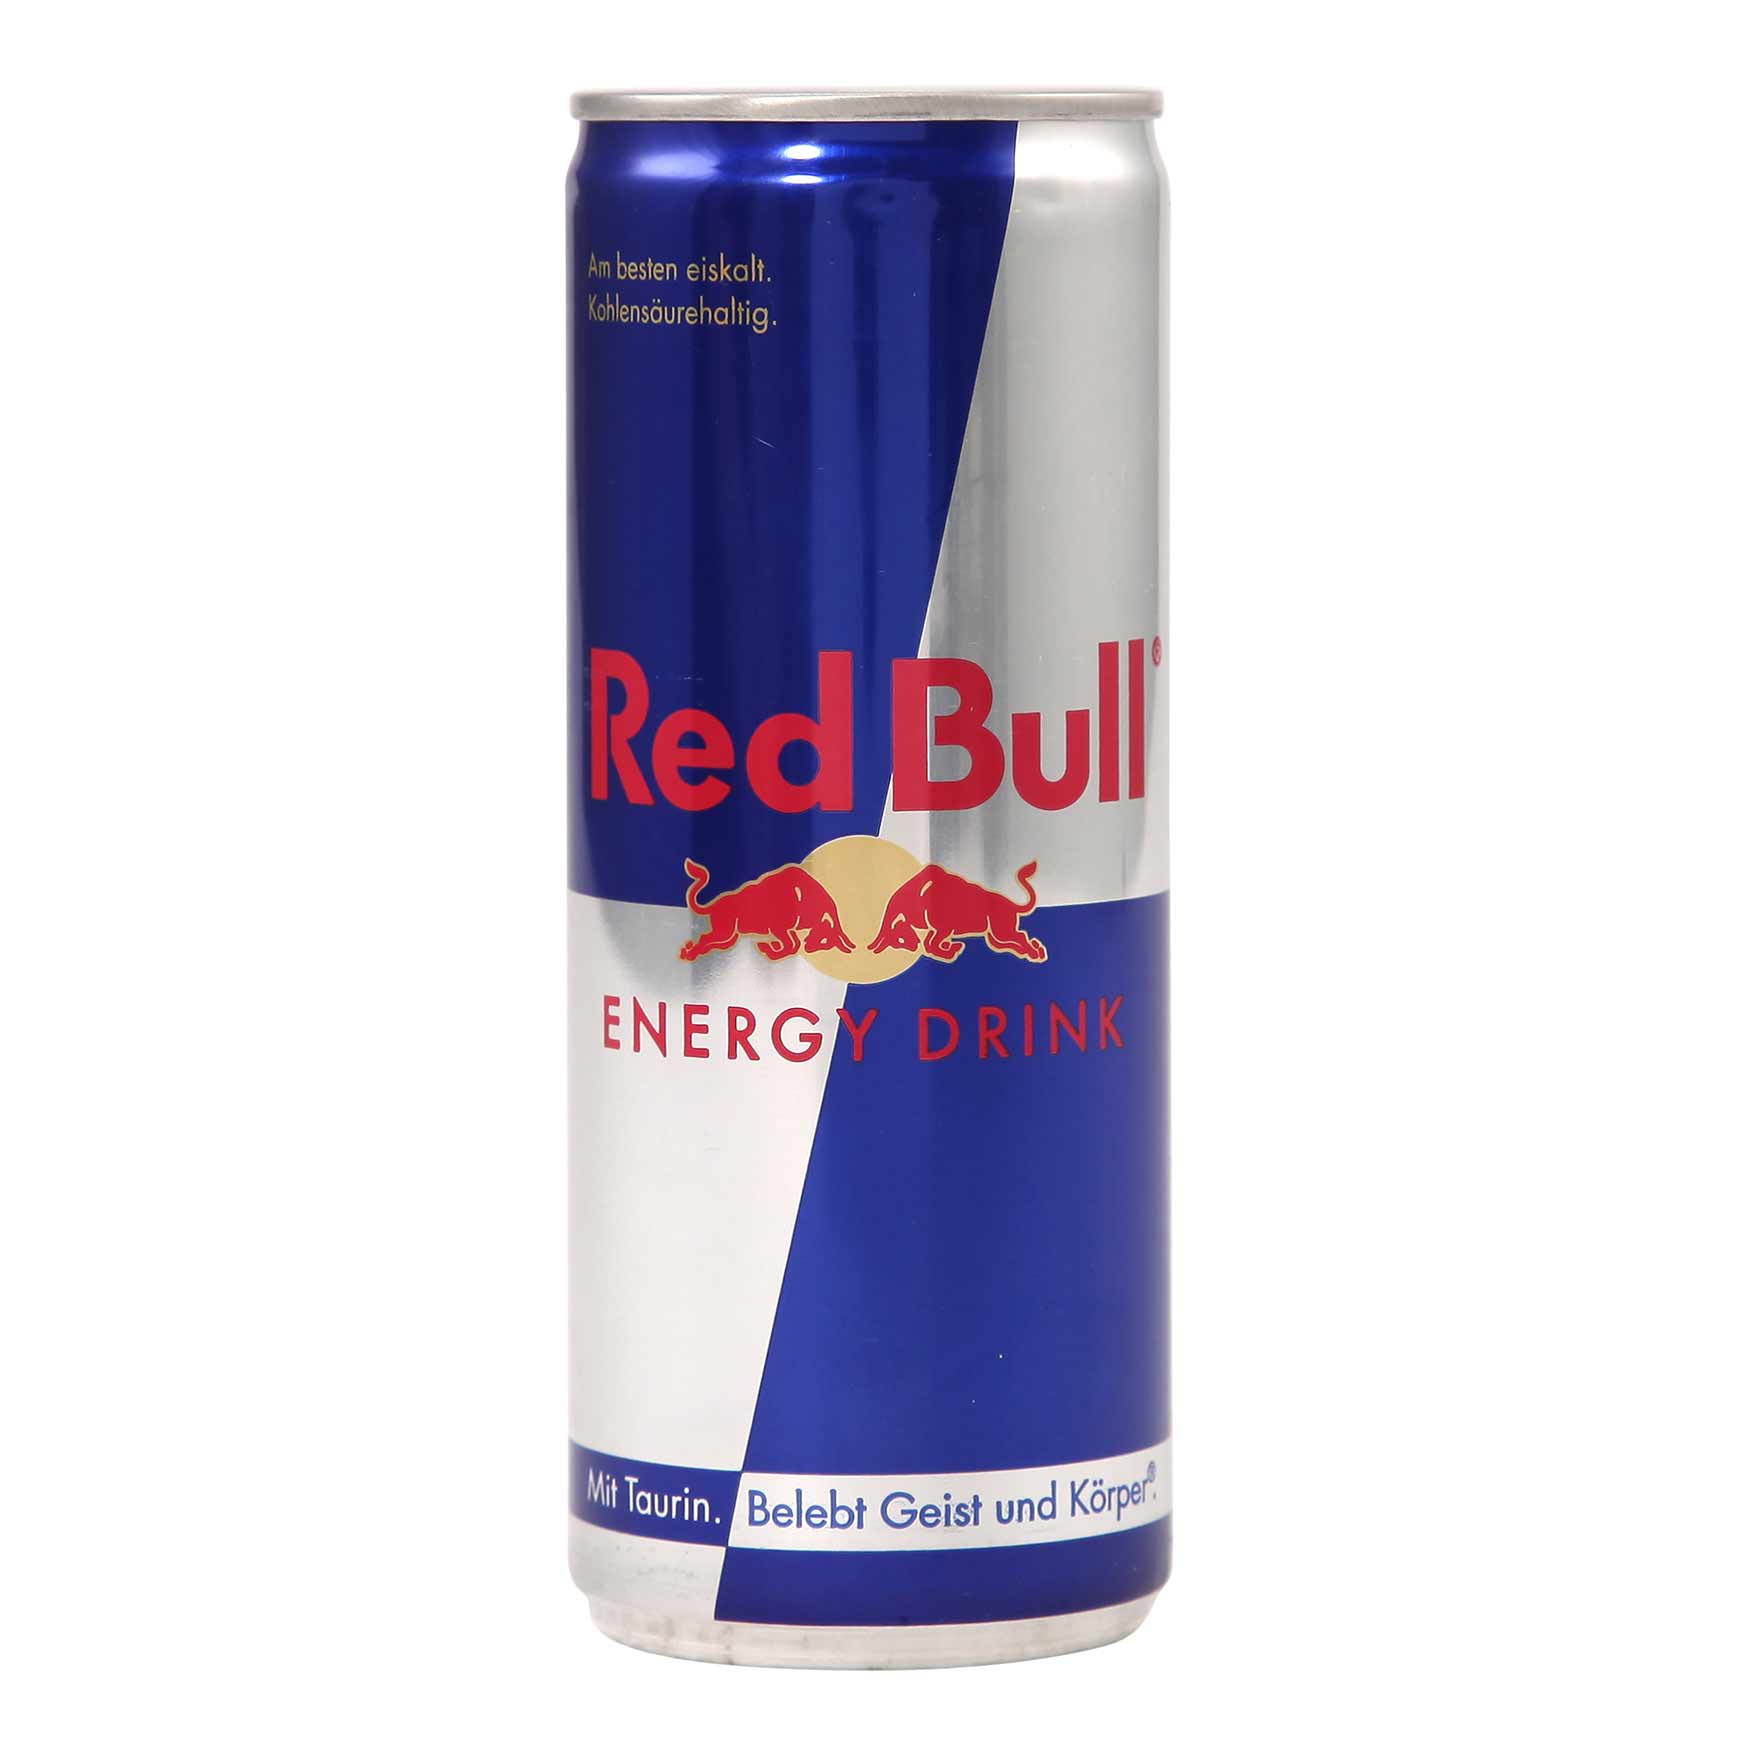 Red bull цена. Red bull 0.25. Энергетический напиток Red bull 250 мл. Напиток энергетический Red bull 0.25л. Напиток Red bull 0,25.